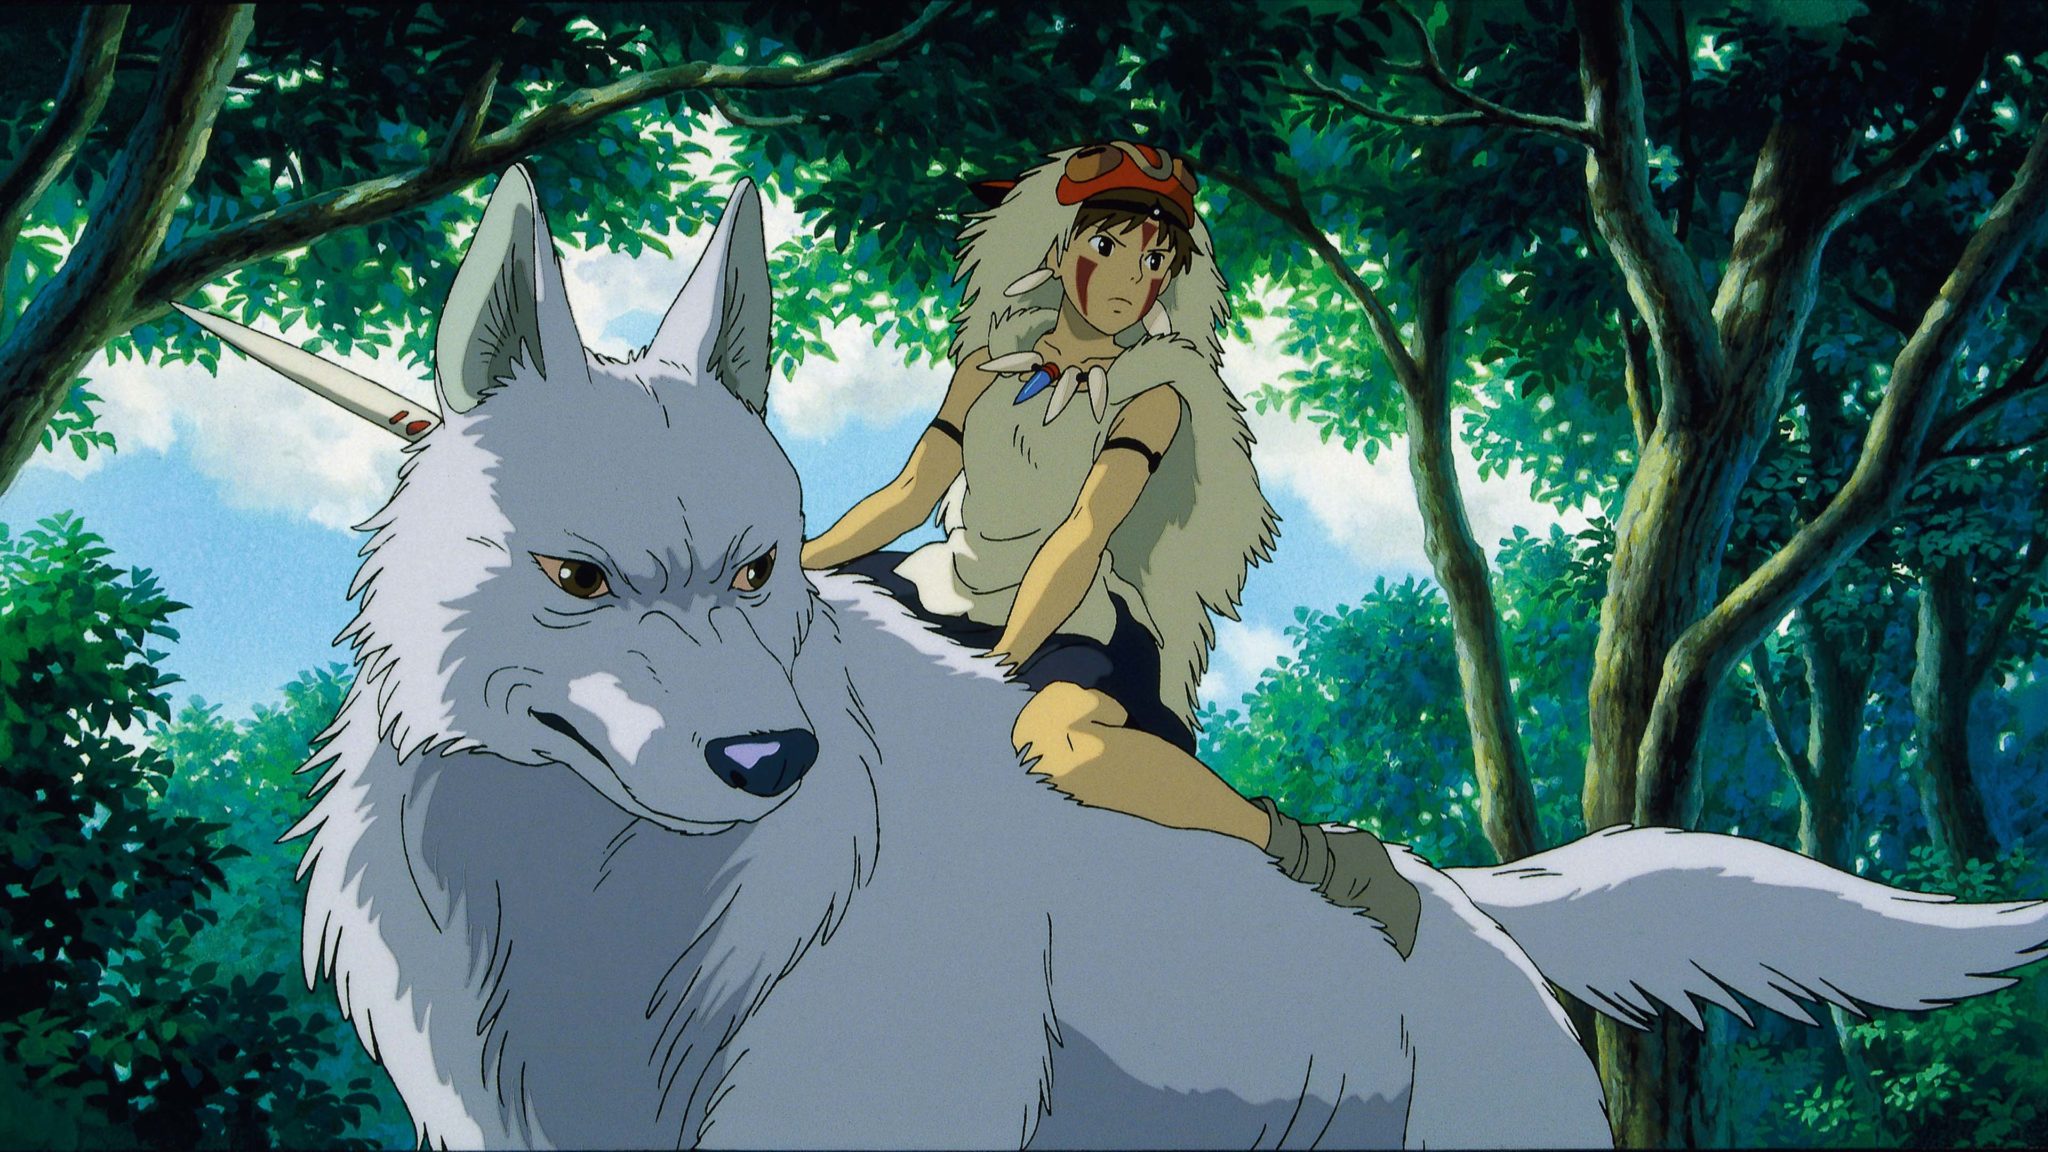 Prinzessin Mononoke reitet auf einem Wolf im gleichnamigen Animefilm.